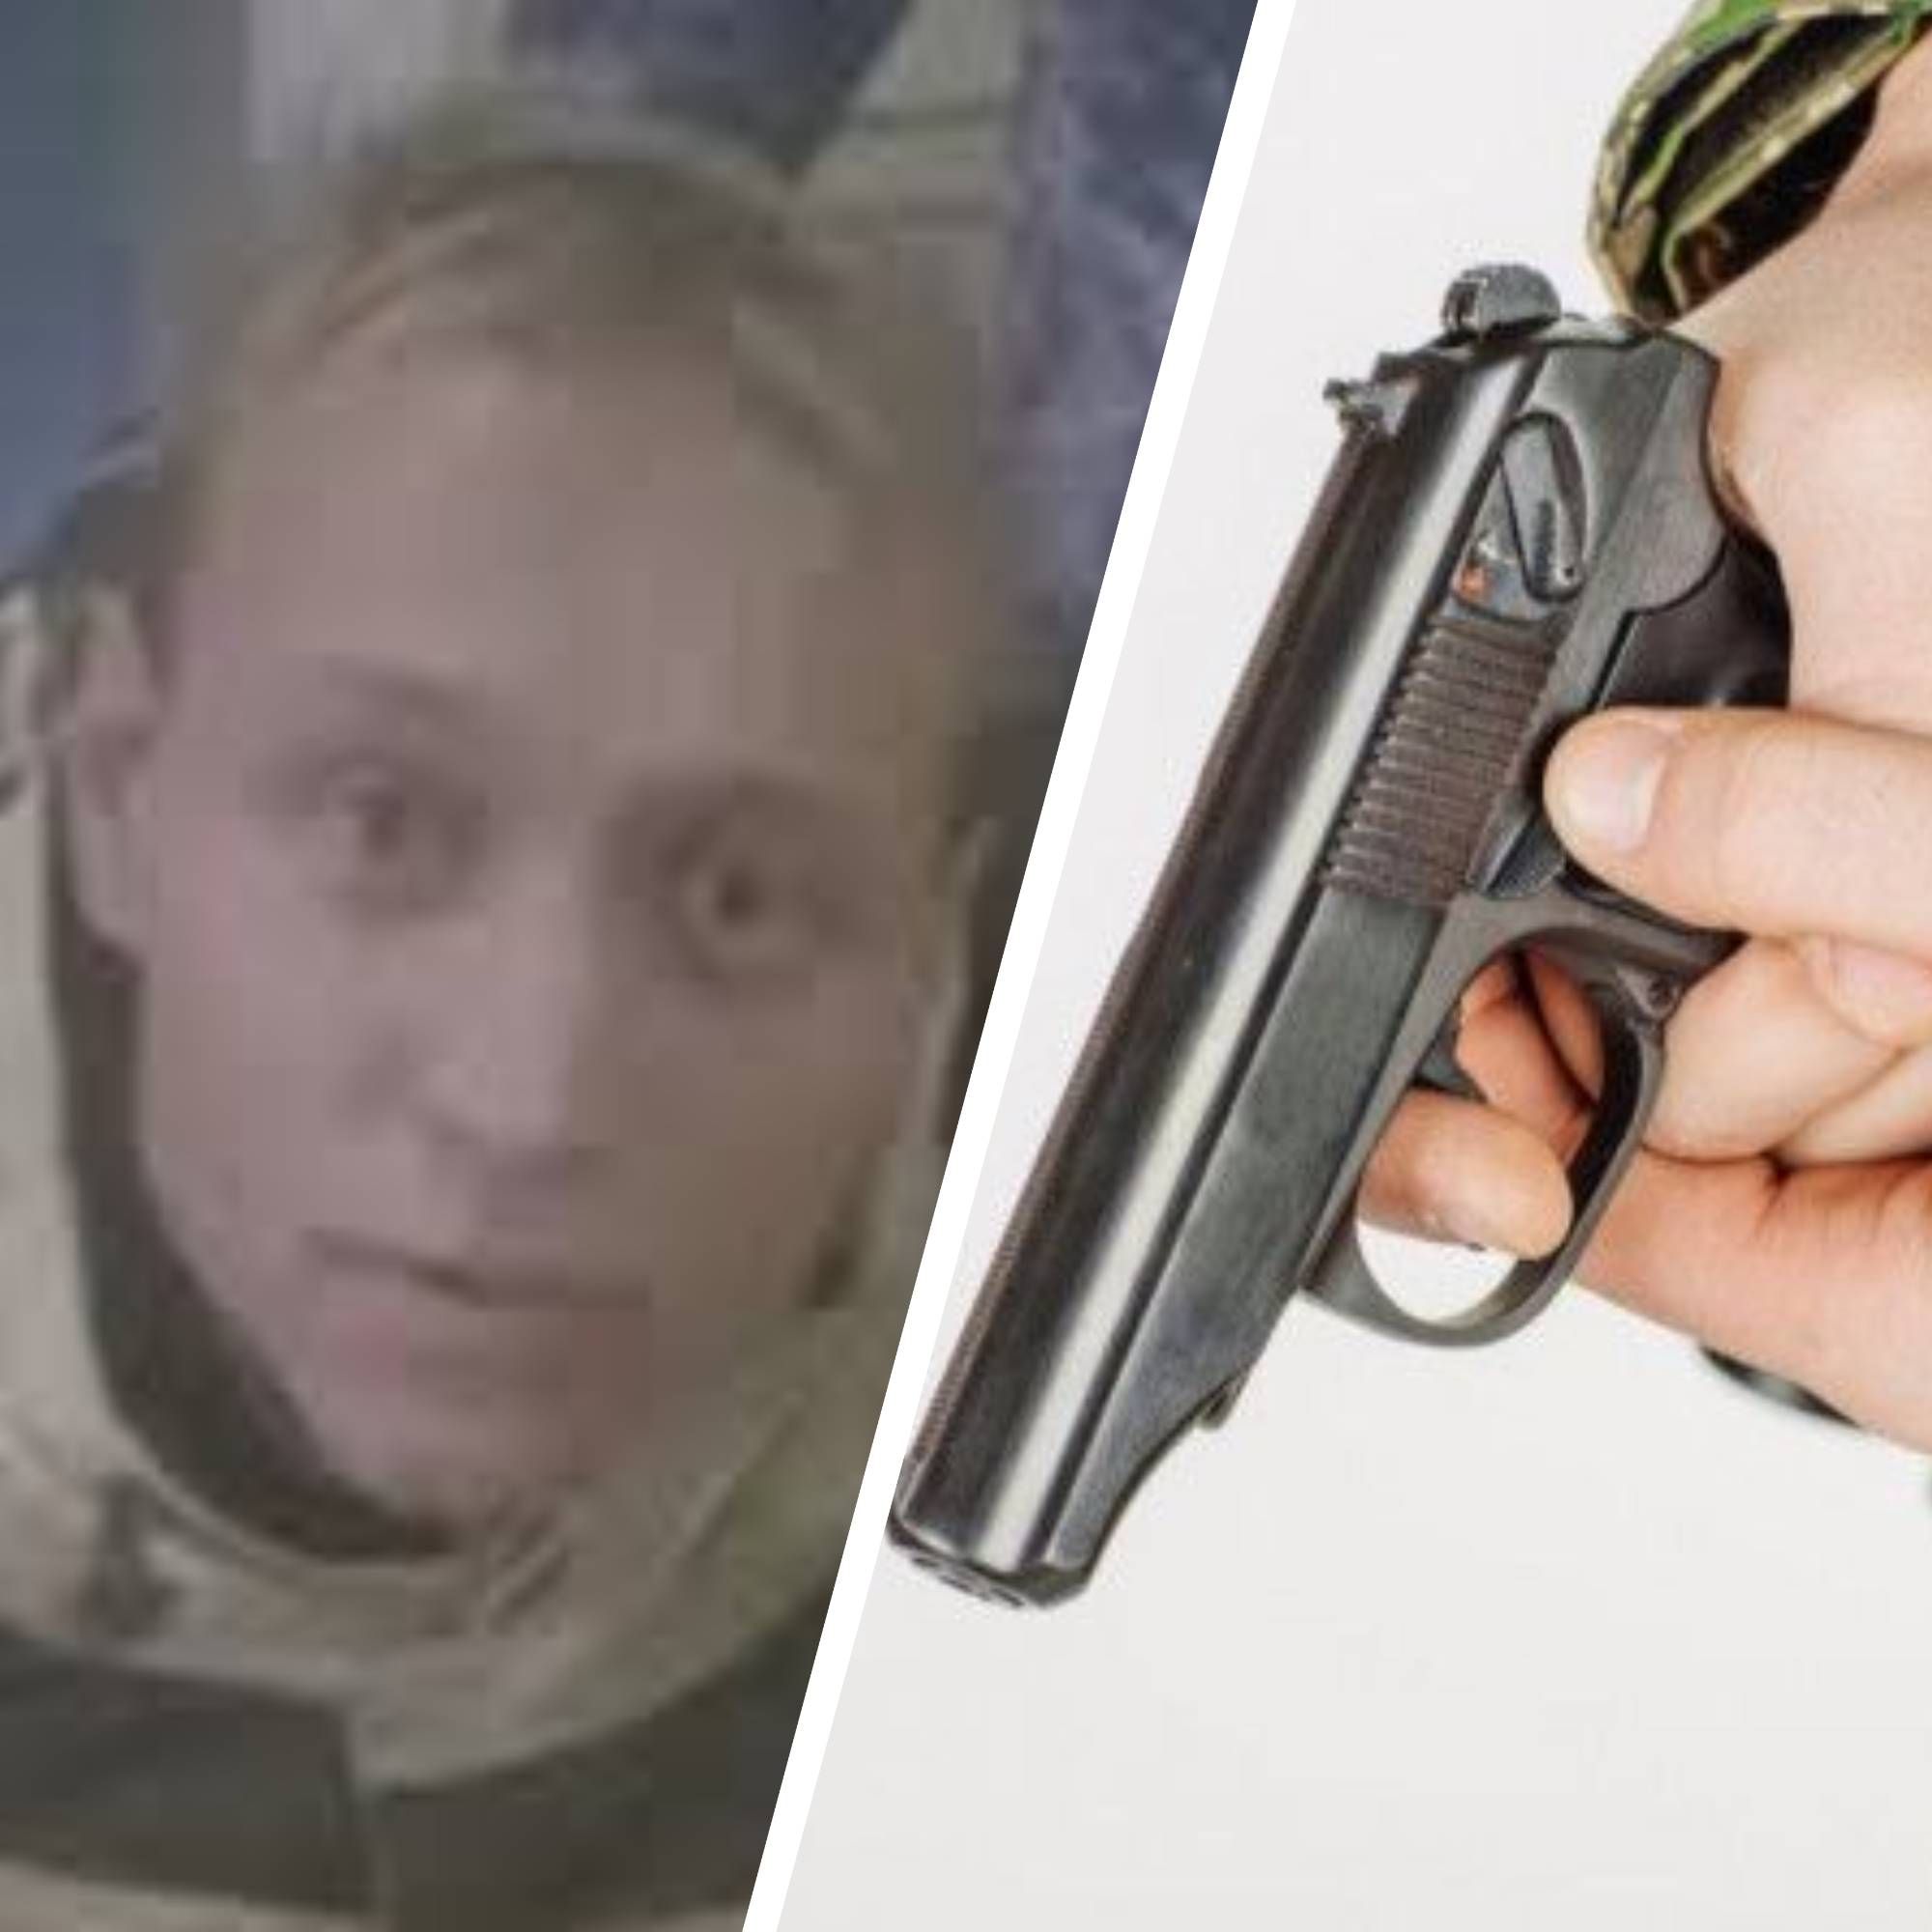 "Никто не будет воевать": мужчина, расстрелявший военкома в россии, пришел с самодельным оружием